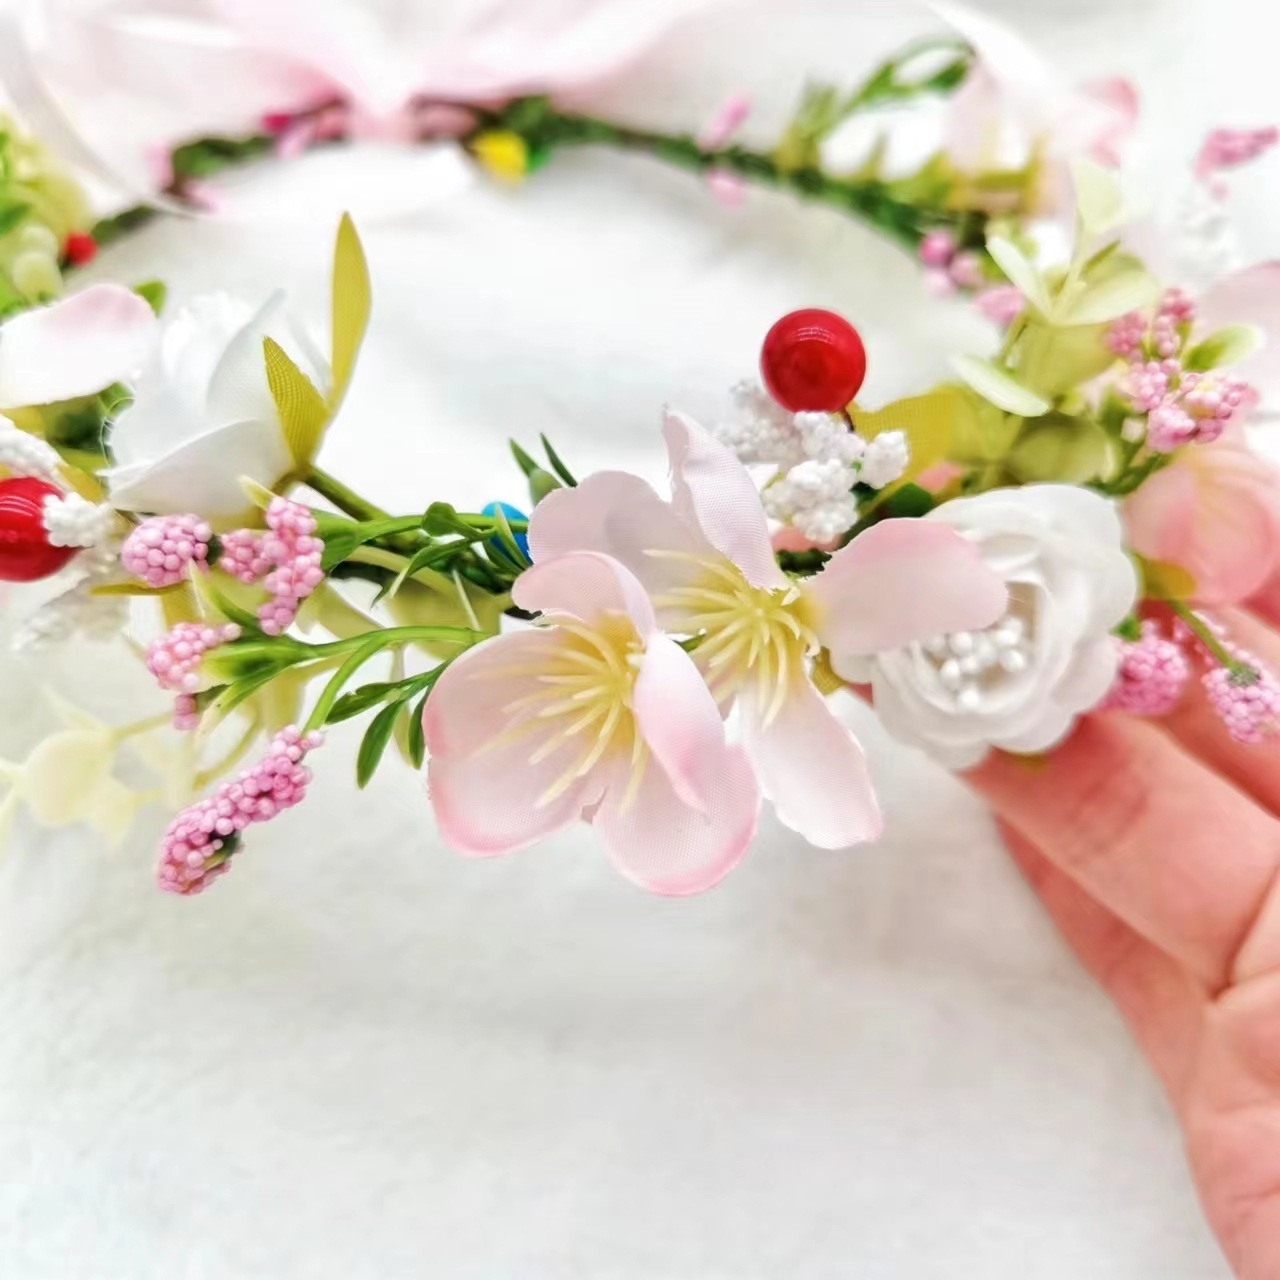 妖精の森の花冠ヘッドバンド、シミュレーション桜の花の王女の髪飾り、旅行やパフォーマンスに最適